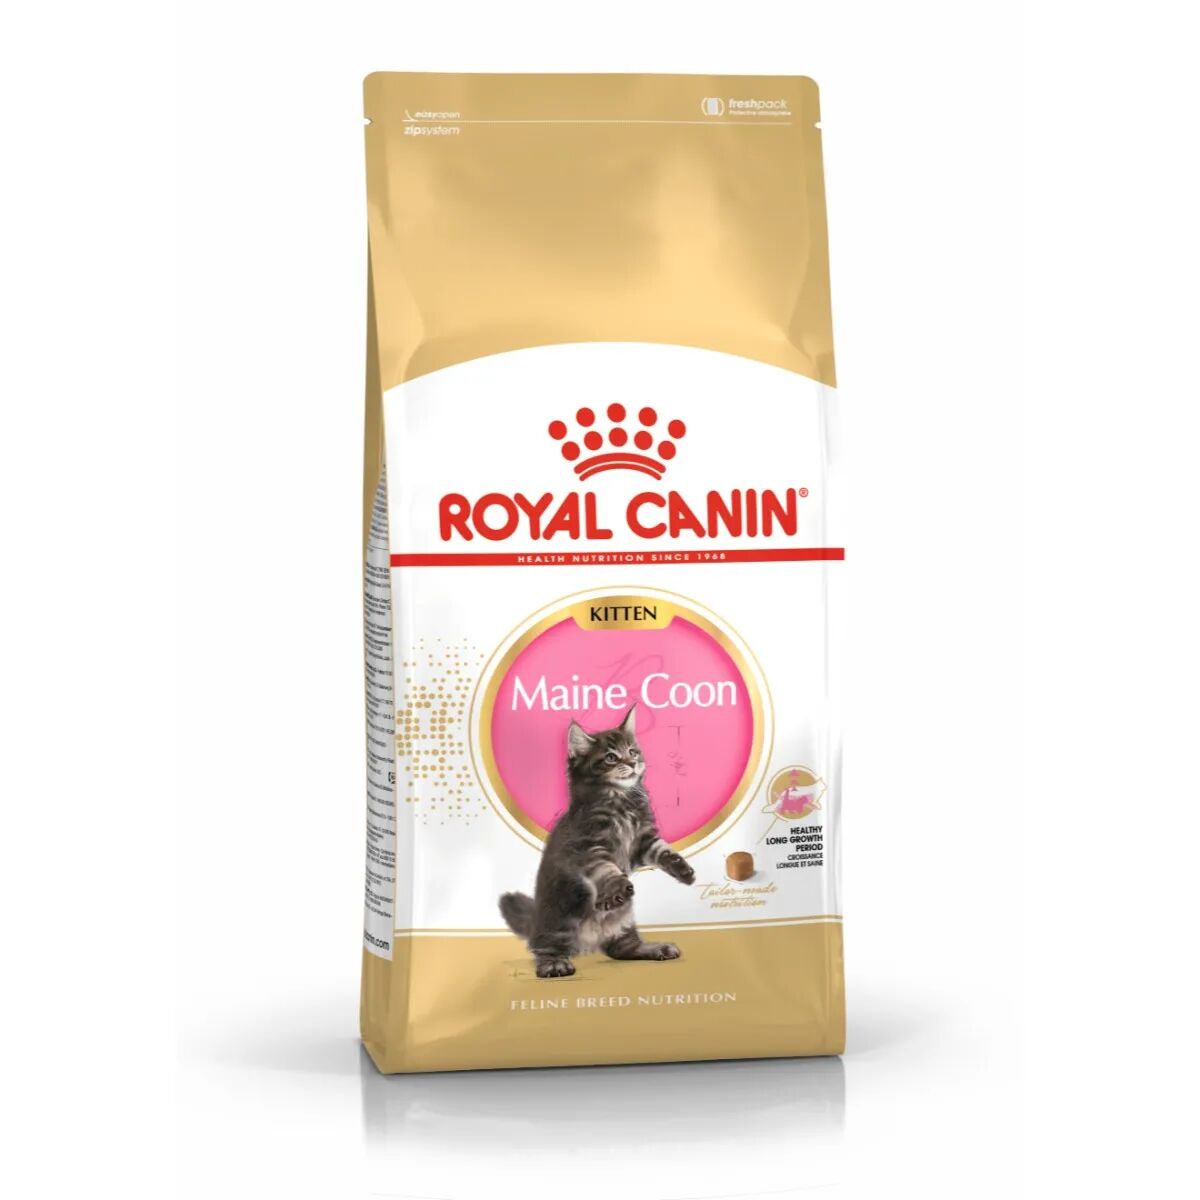 royal canin maine coon alimento completo per gattini fino a 15 mesi di età 2kg